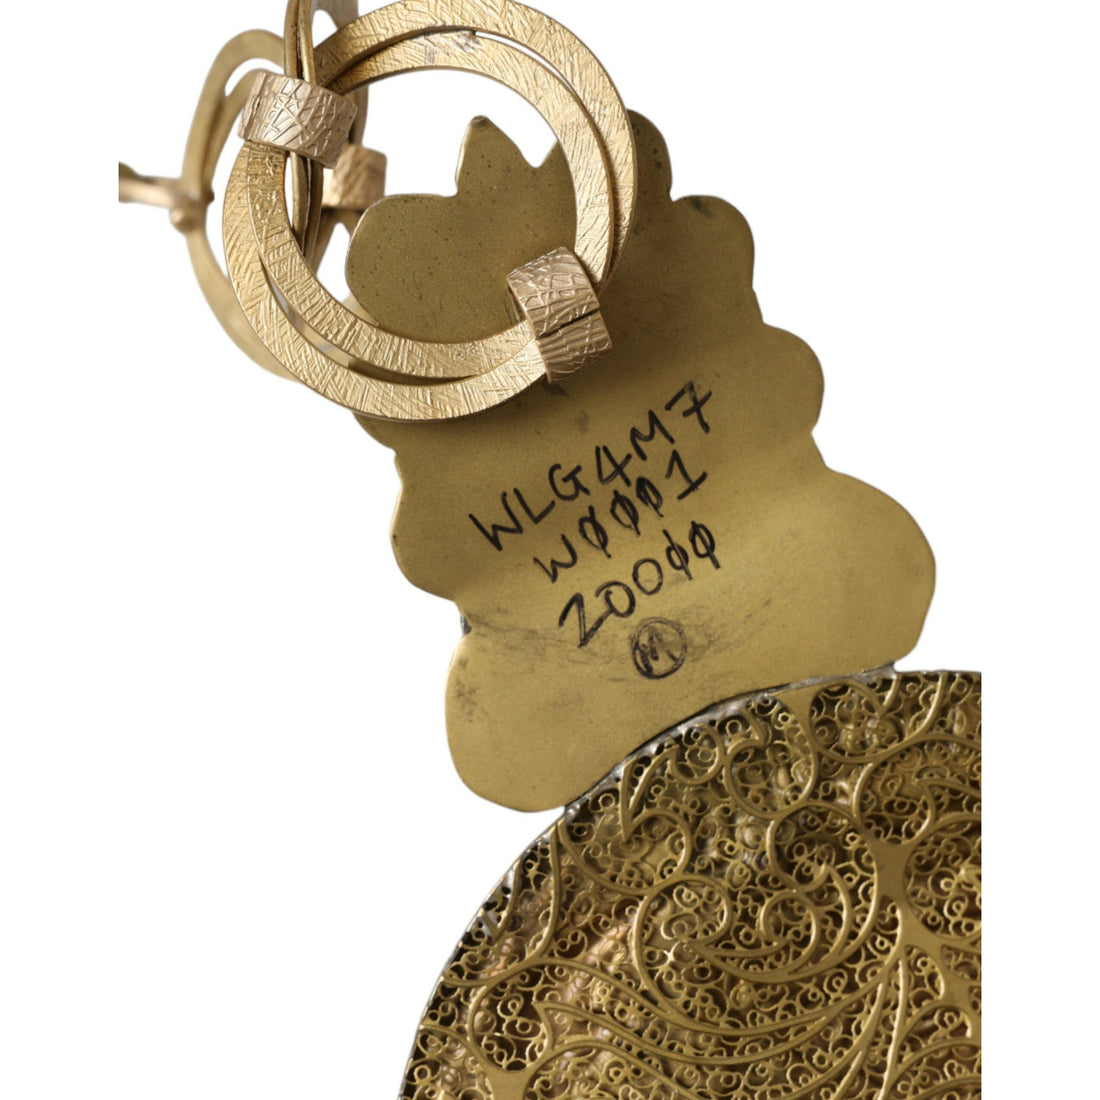 Dolce & Gabbana Gold Tone Brass Oversized Round Coin MONETE Belt